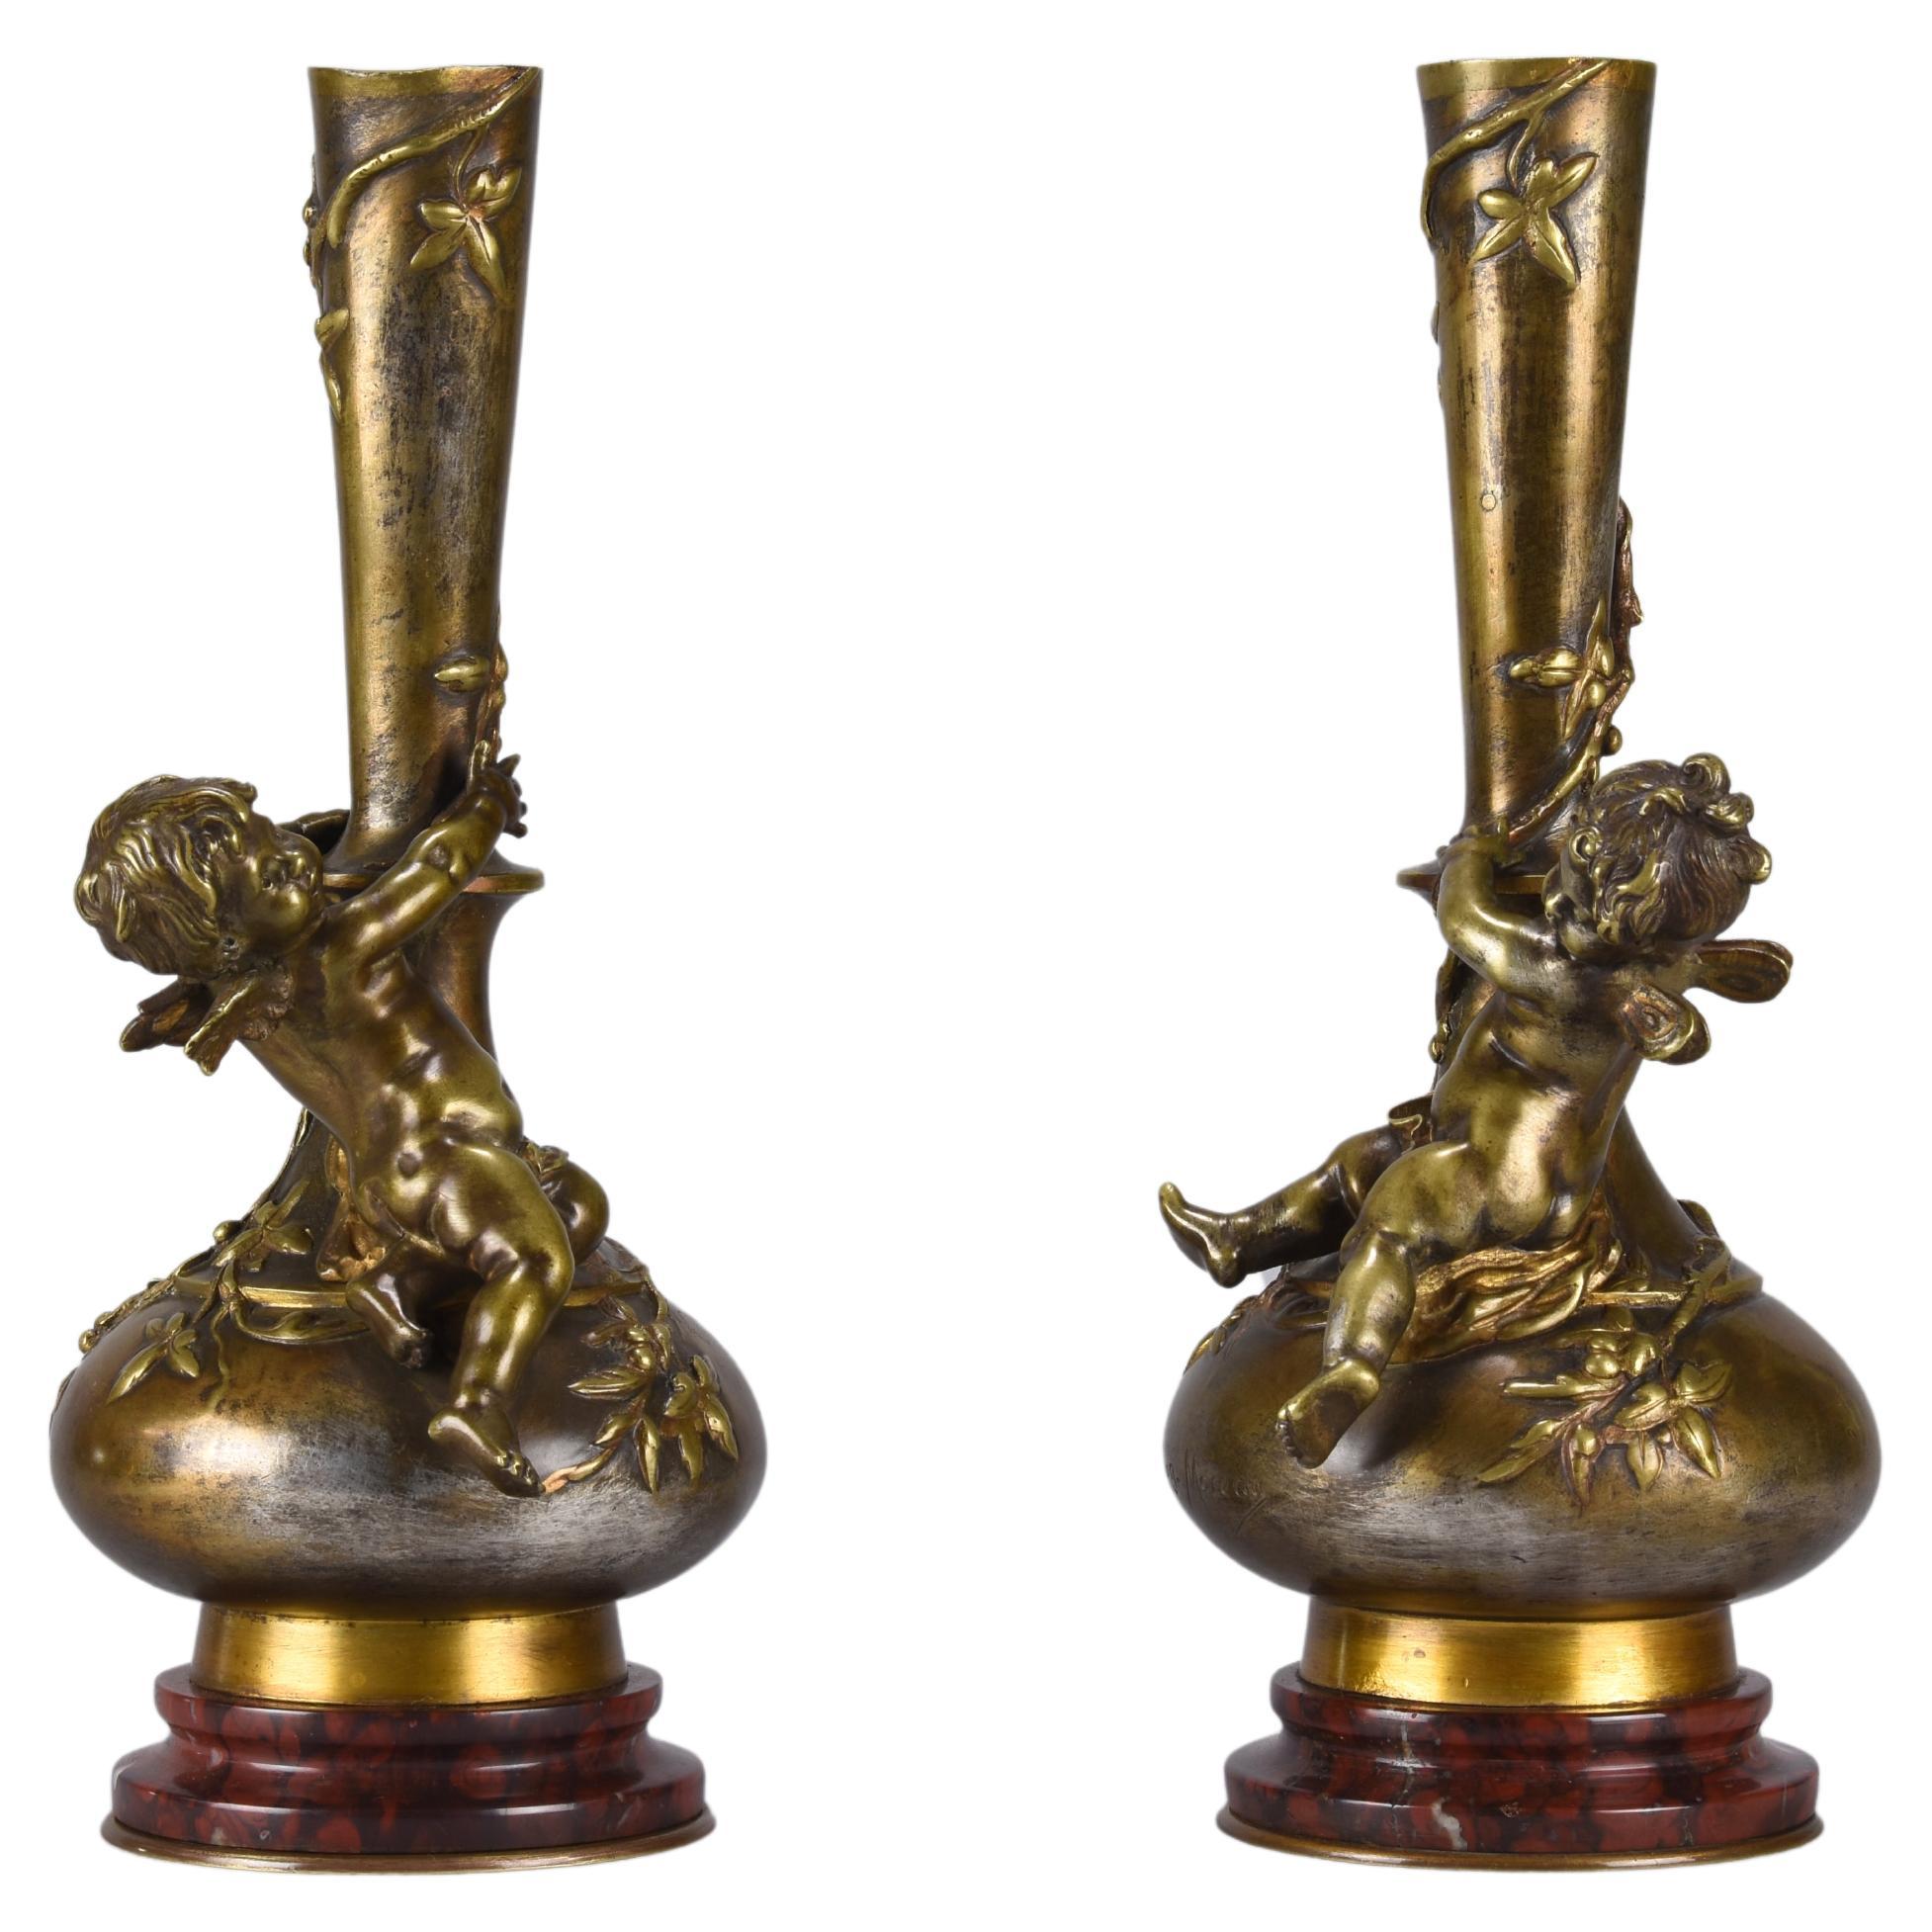 Late-19th Century Art Nouveau Bronze Vase Entitled "Putto Vases" by a Moreau